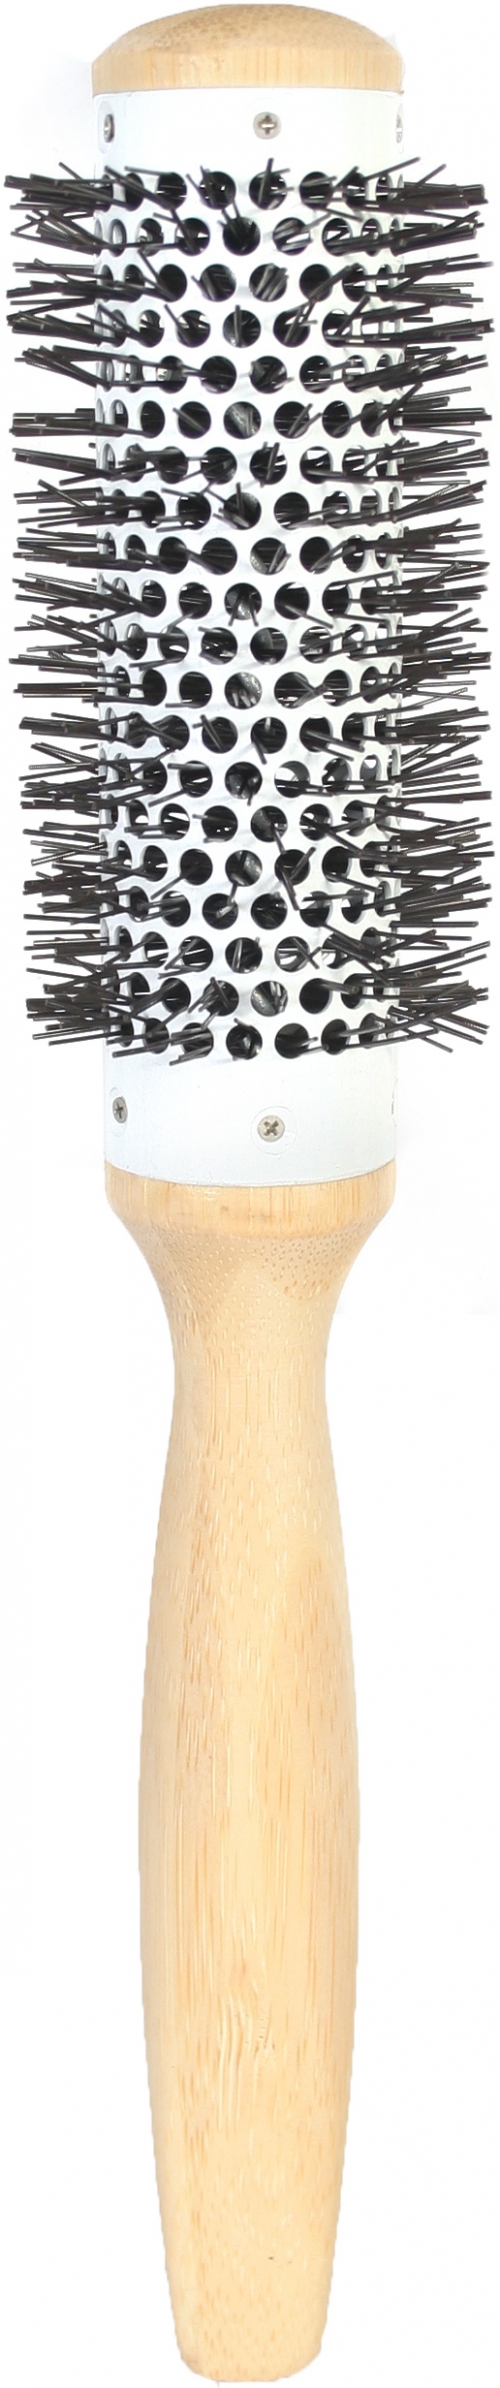  Bamboo Brush, 31mm. Nylon Bristles, Ceramic Barrel